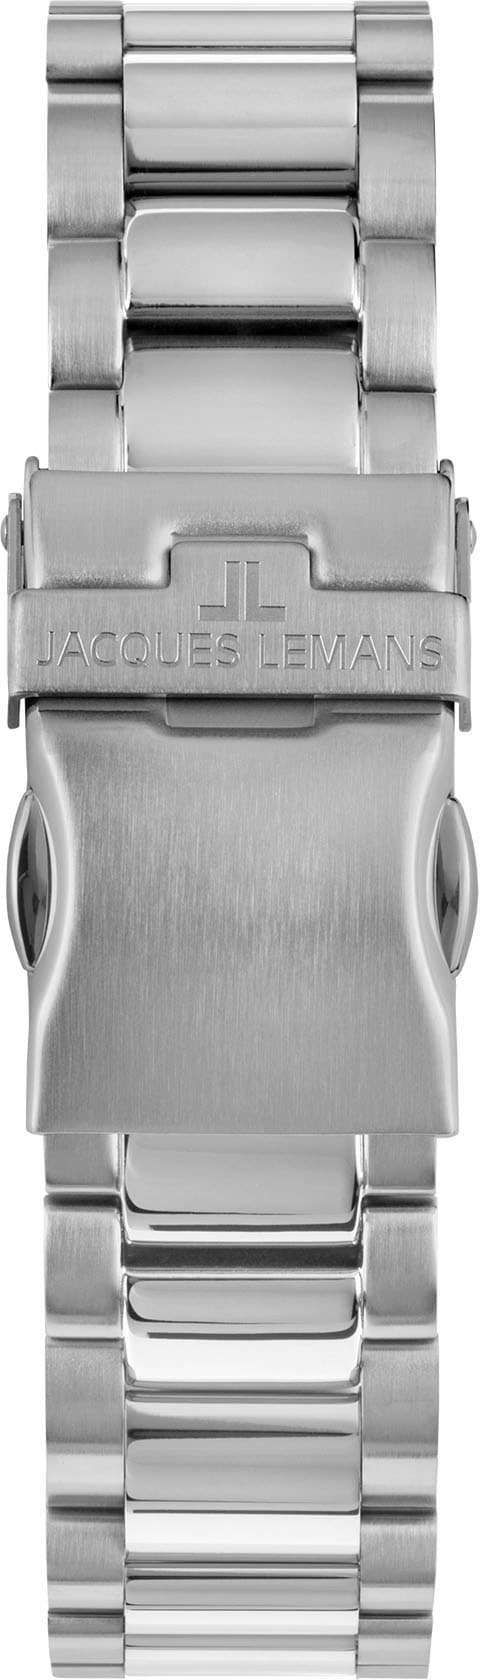 Jacques Lemans Chronograph »Liverpool, 1-2140K« online kaufen | BAUR